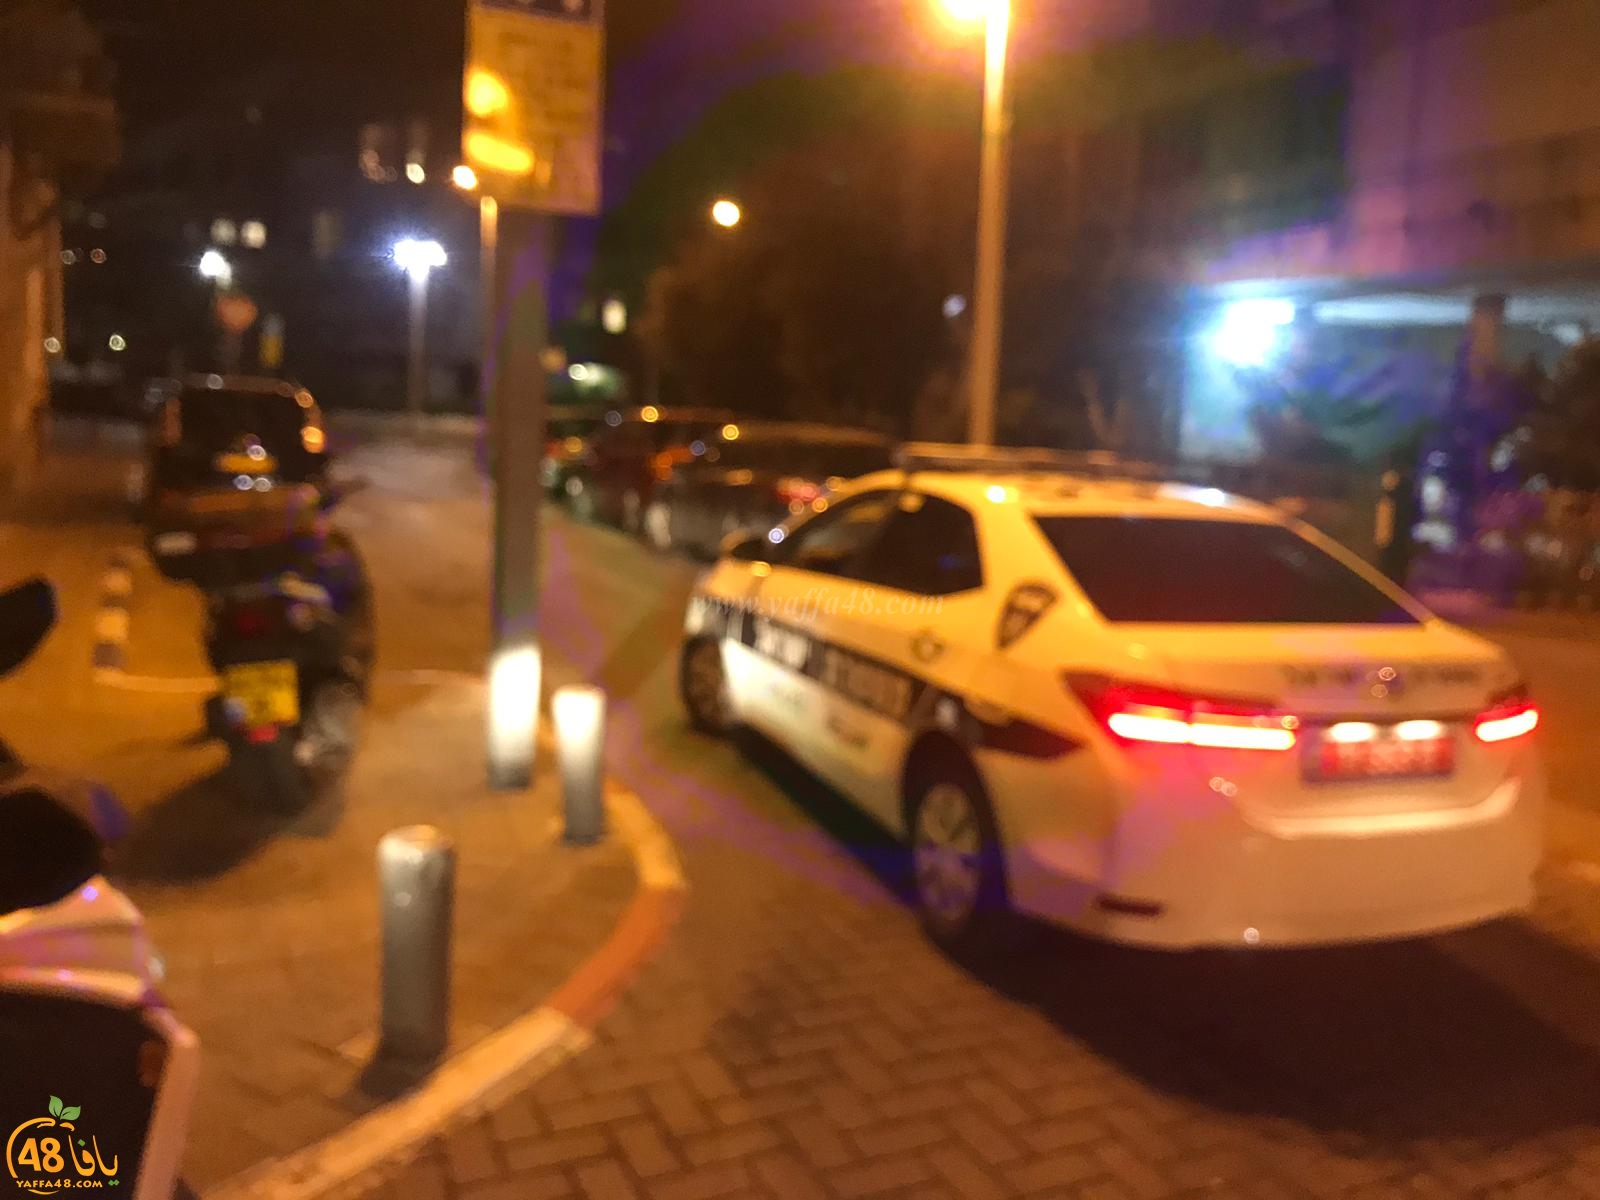  يافا: الشرطة تُغلق شارع شيفتي يسرائيل بعد العثور على جسم مشبوه 